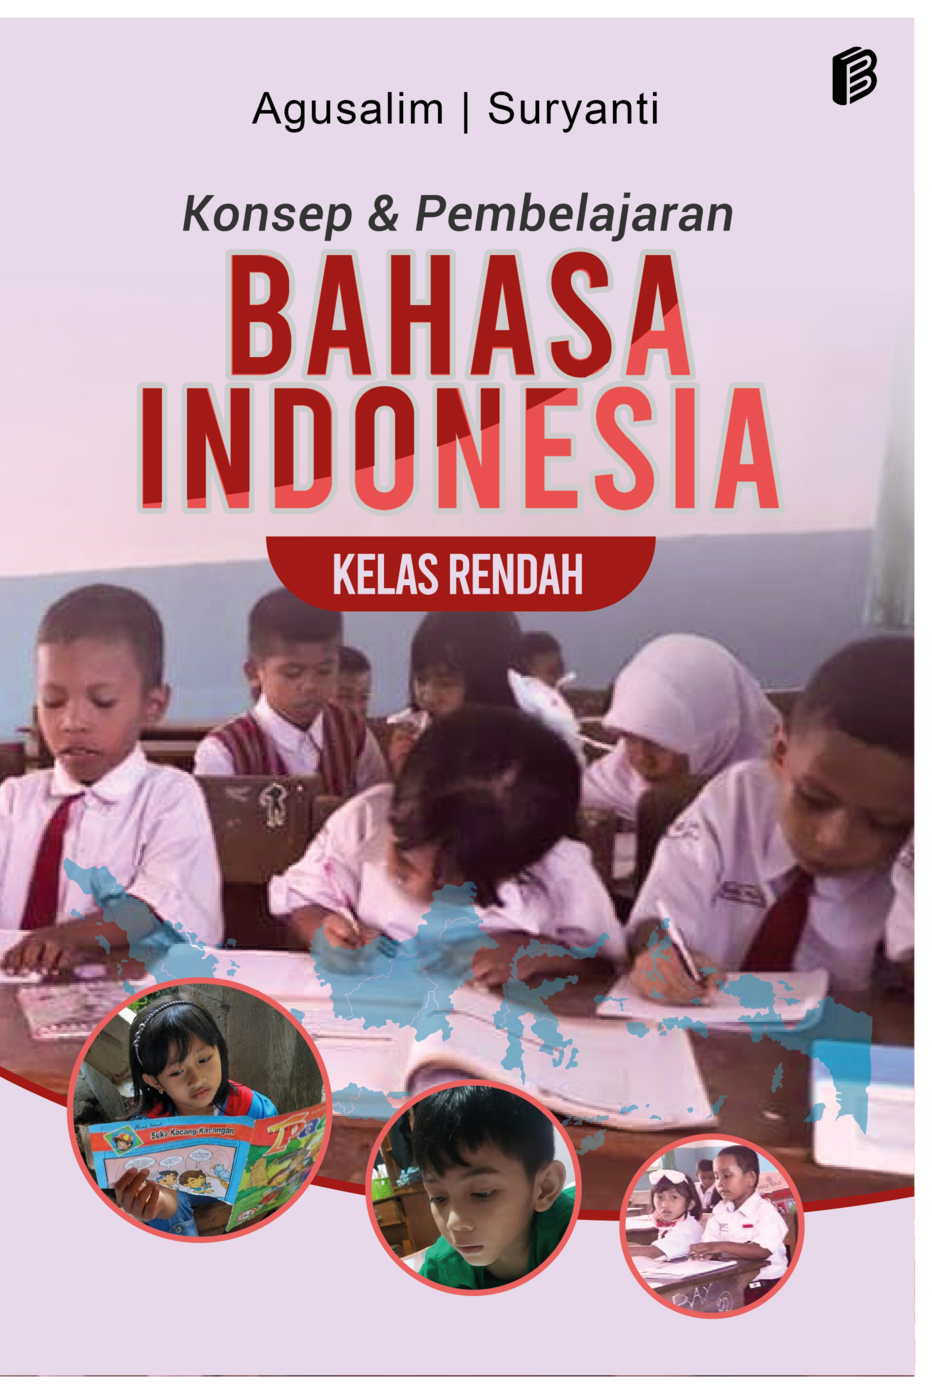 cover/(14-10-2022)konsep-dan-pembelajaran-bahasa-indonesia-kelas-rendah.png